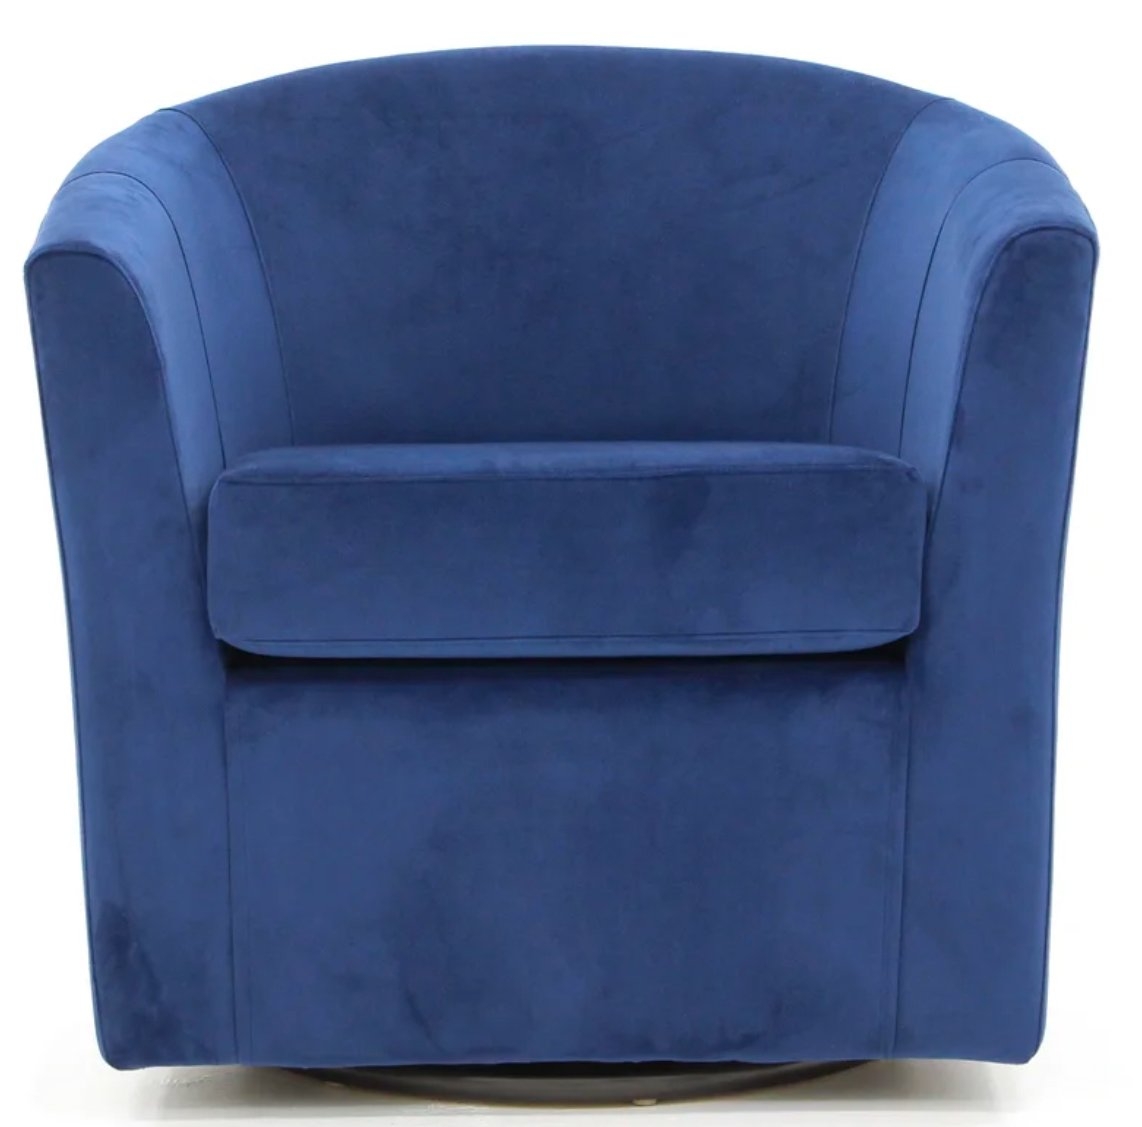 Hansell Upholstered Swivel Barrel Chair - Image 0